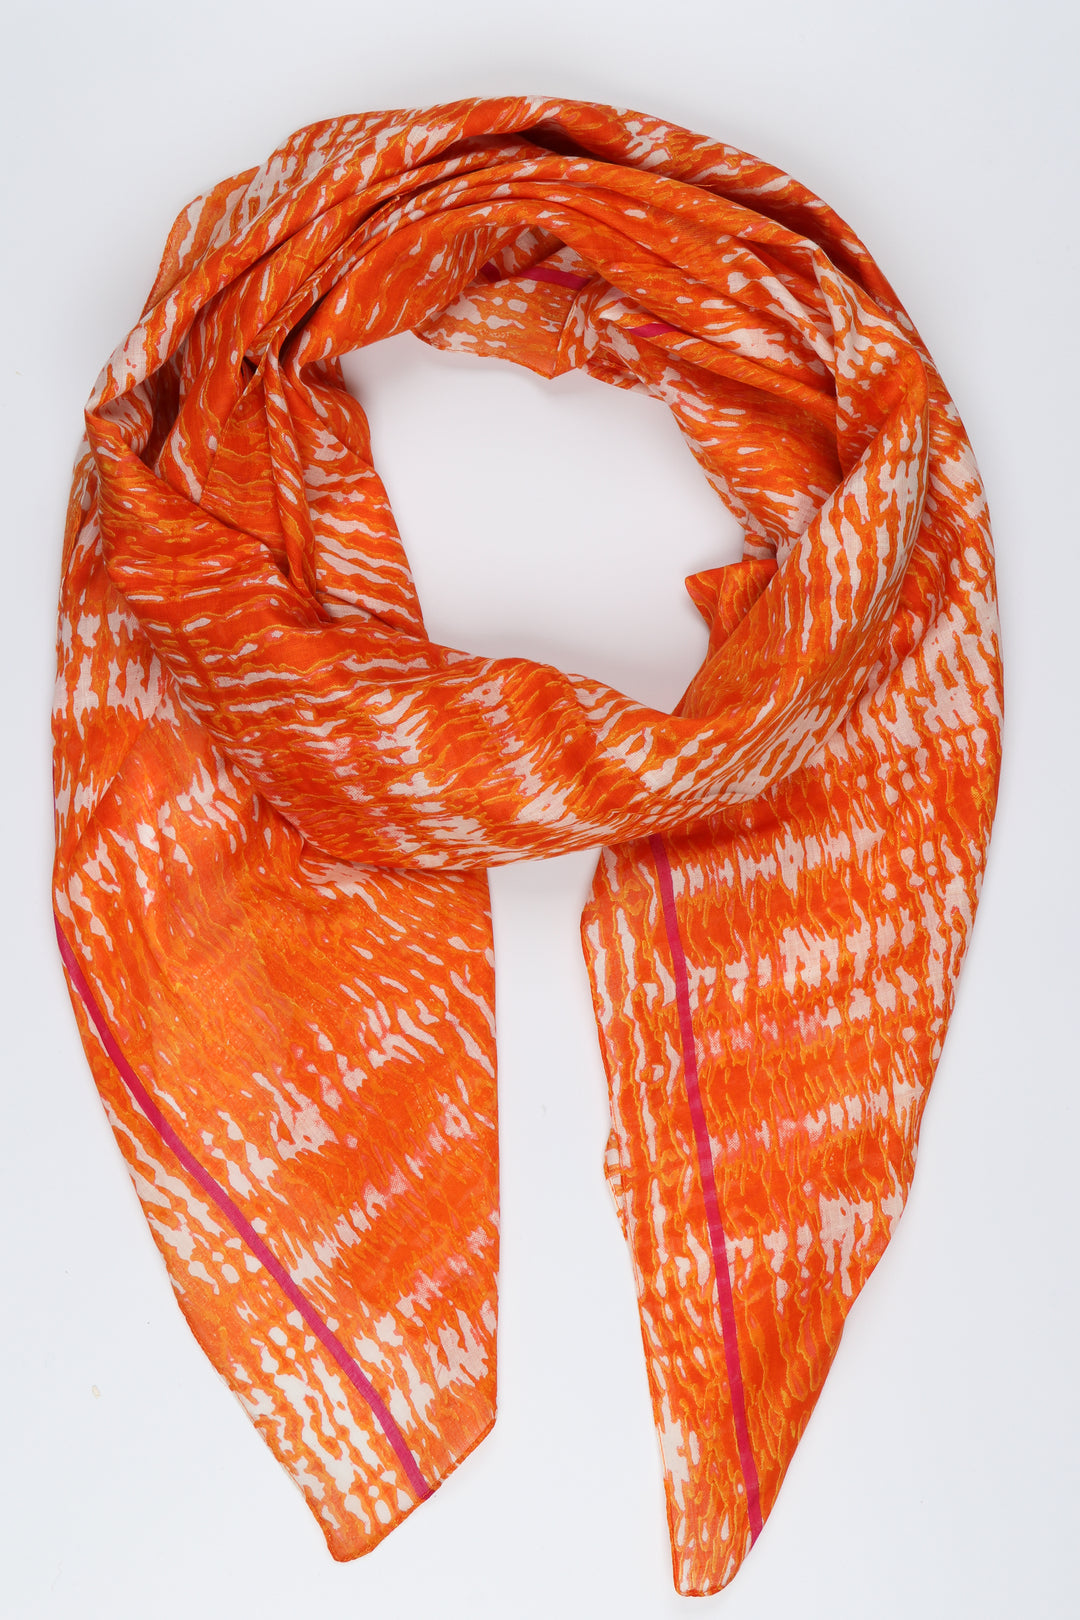 lightweight orange cotton tie dye scarf with a neon pink striped border